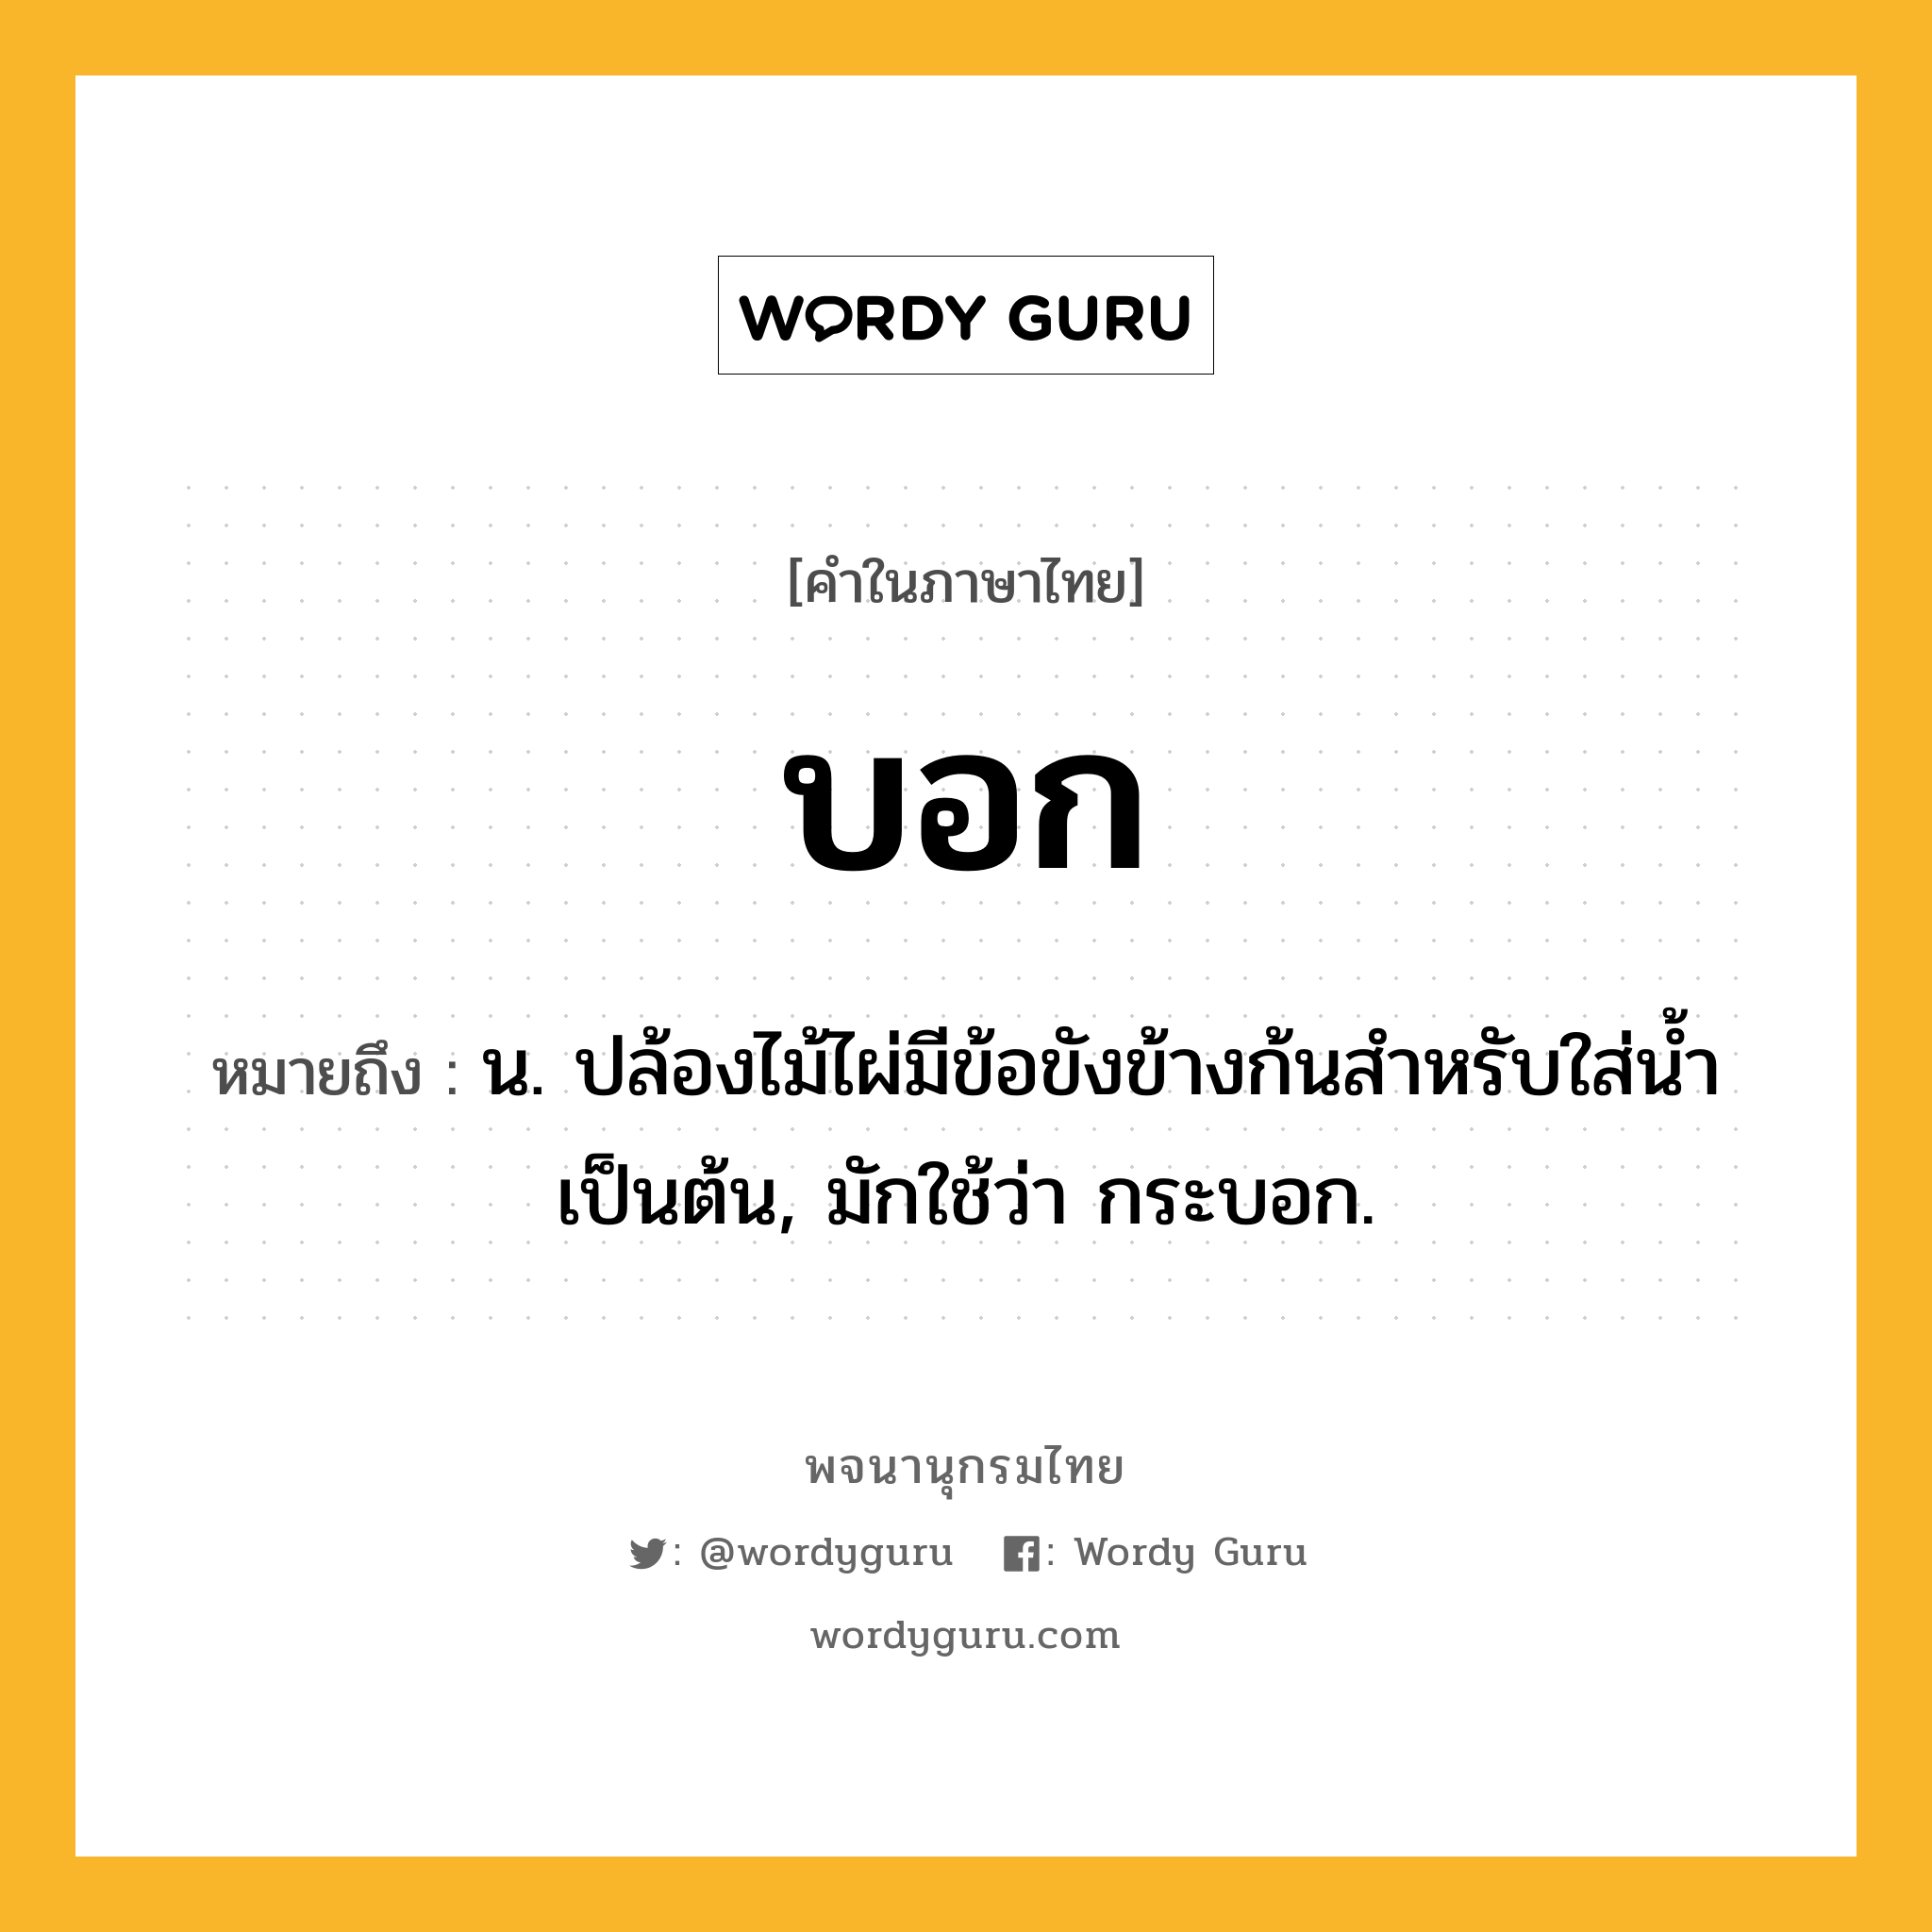 บอก หมายถึงอะไร?, คำในภาษาไทย บอก หมายถึง น. ปล้องไม้ไผ่มีข้อขังข้างก้นสําหรับใส่นํ้าเป็นต้น, มักใช้ว่า กระบอก.